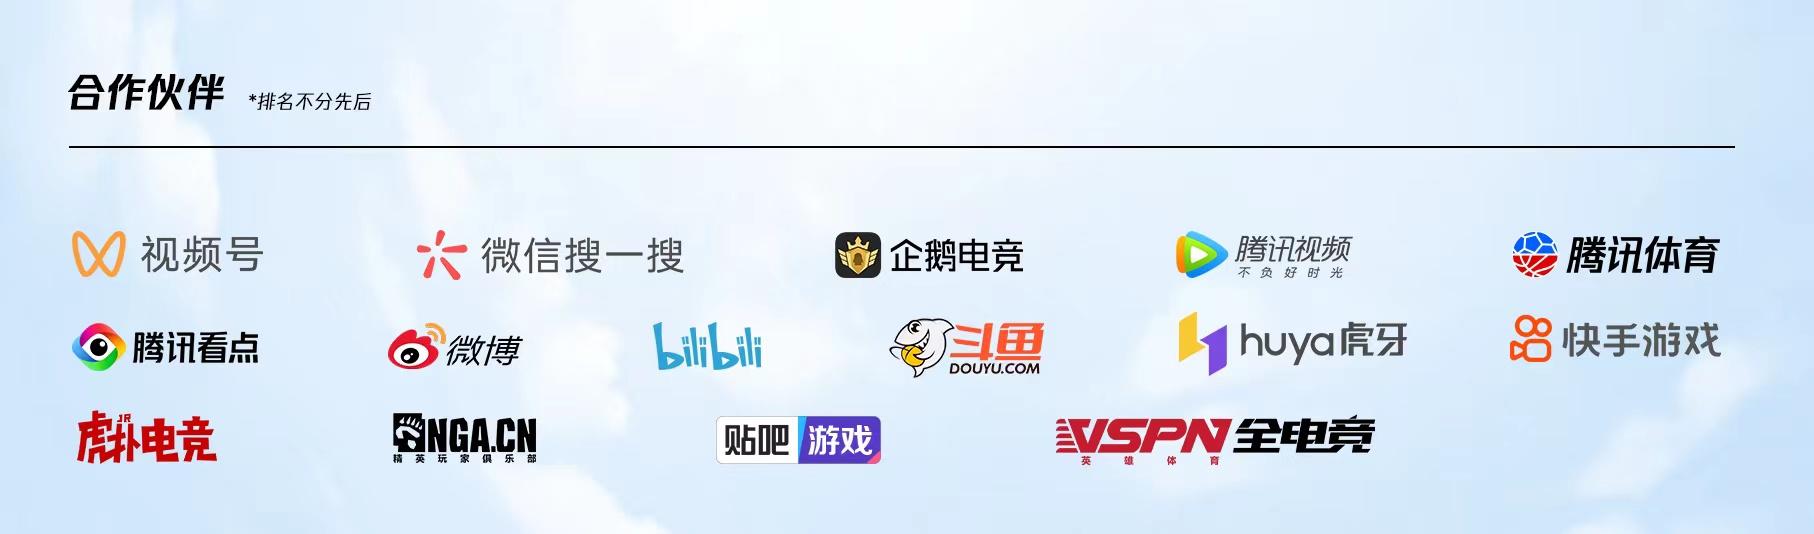 共竞亚洲！杭州2022年亚运会电竞项目正式公布